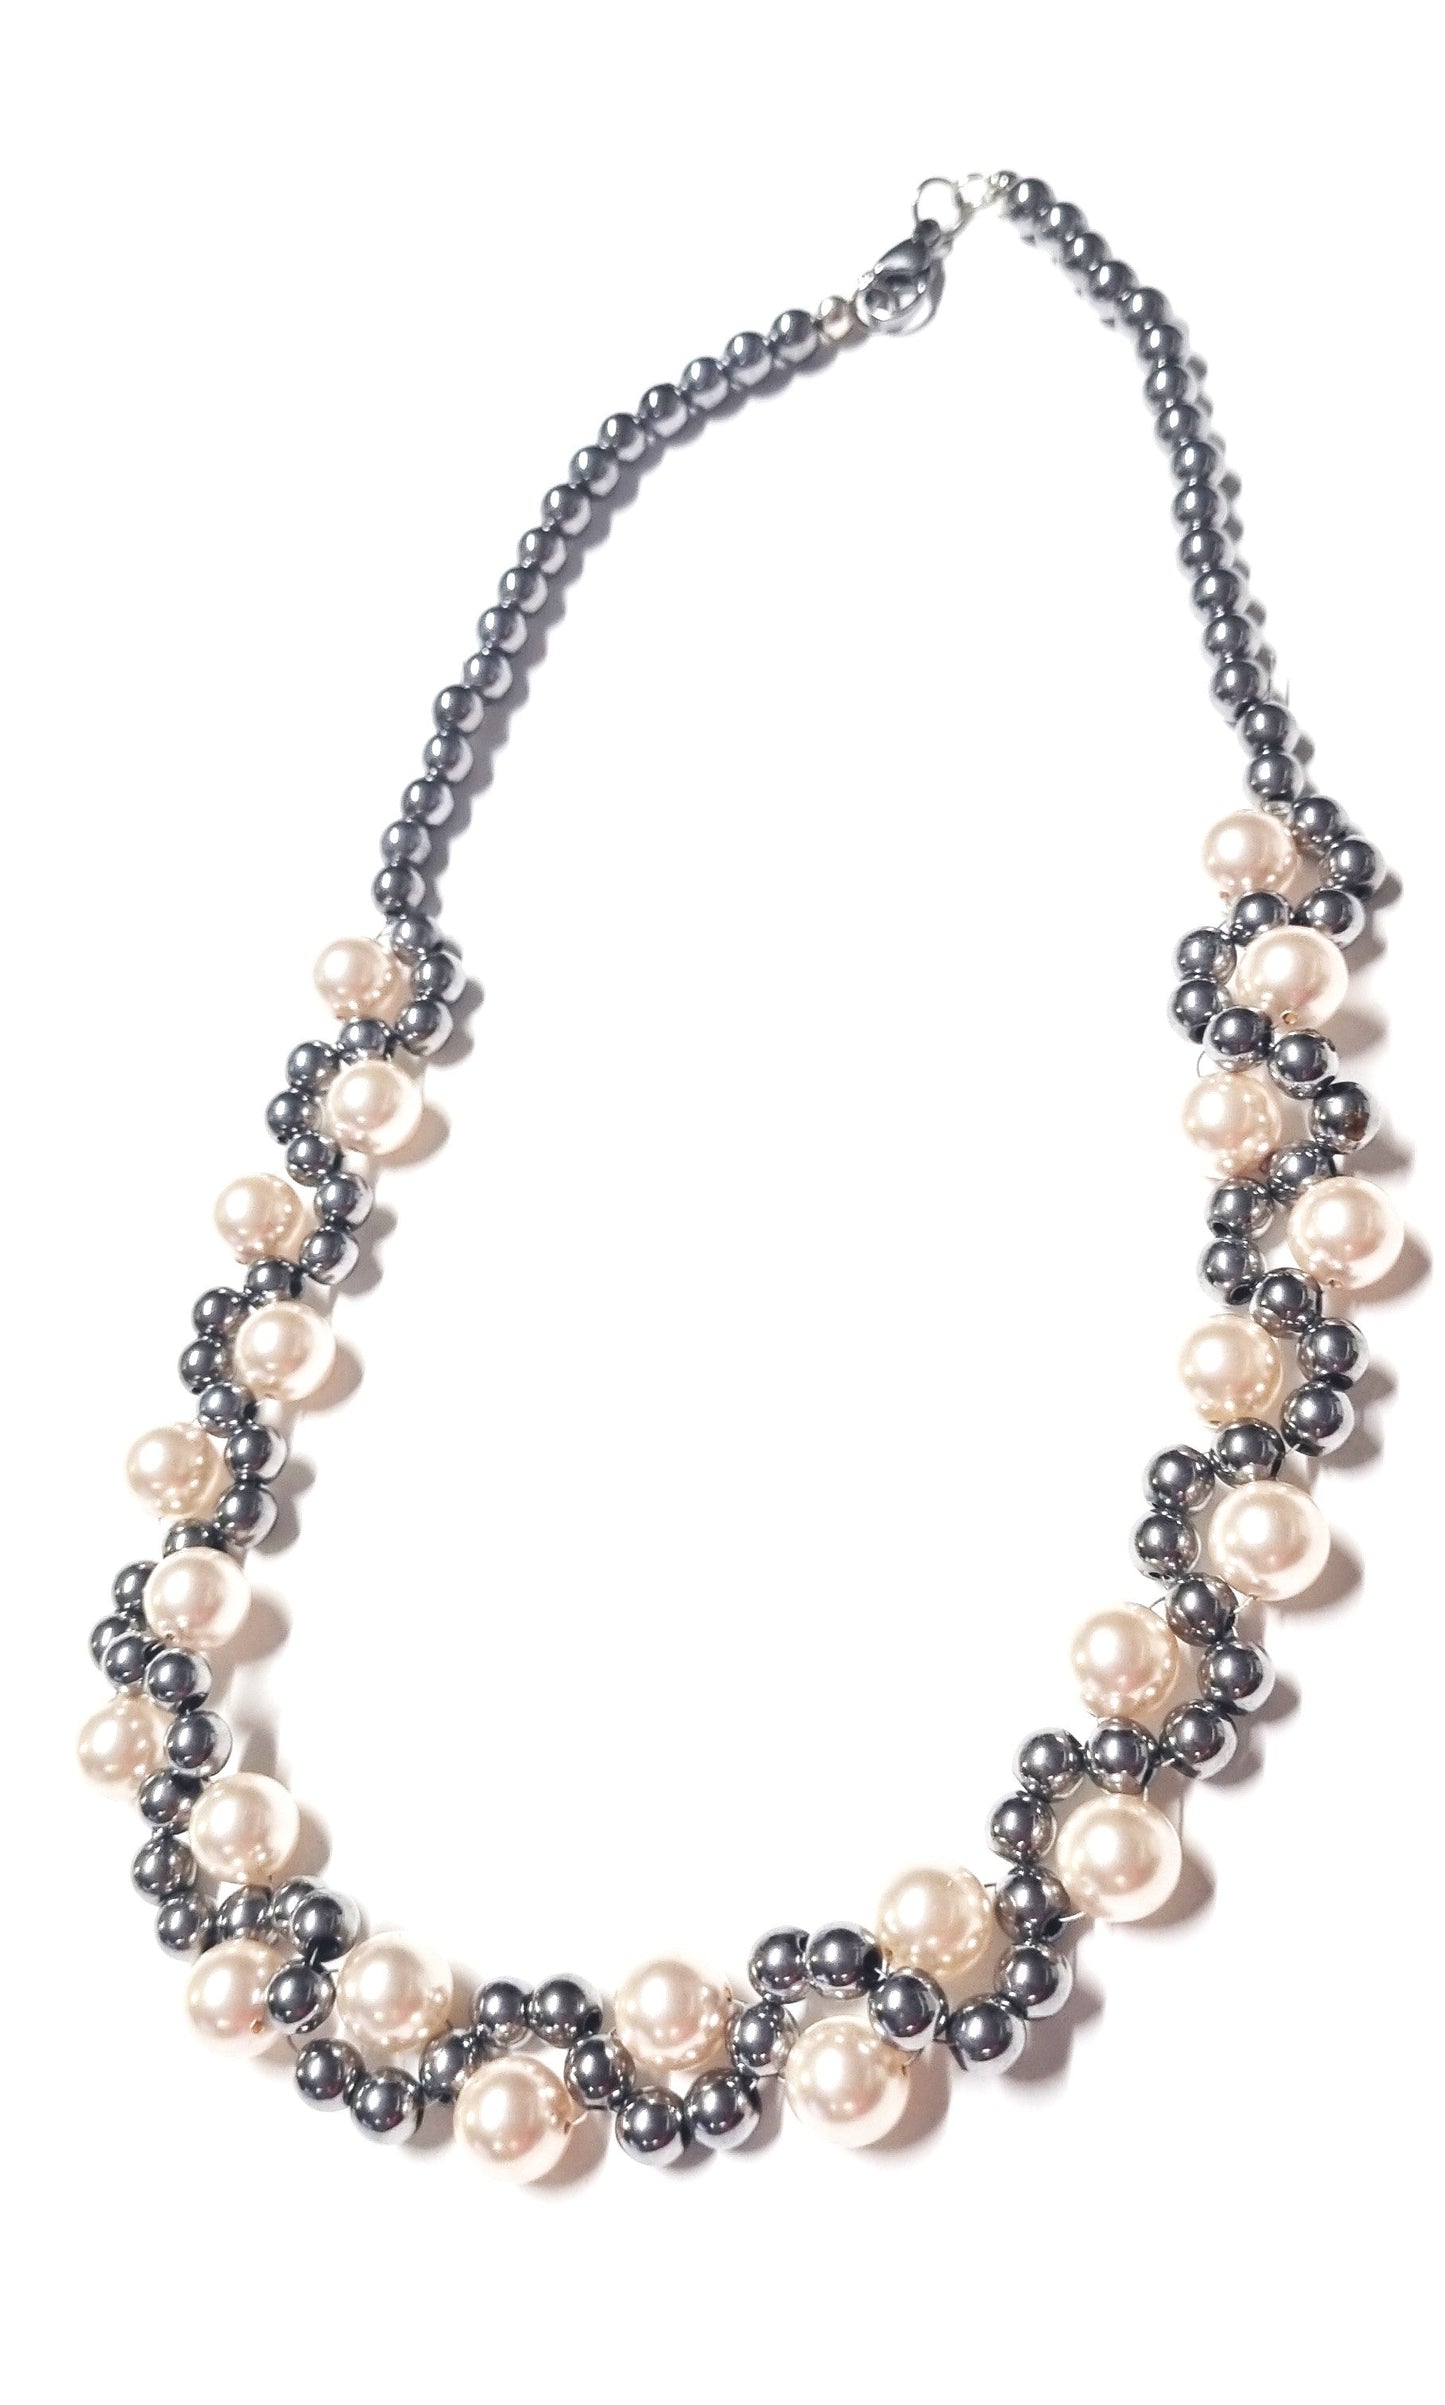 Orecchini LE PERLE .047 perline grigio lucido ematite, montate a spirale con perle cristallo